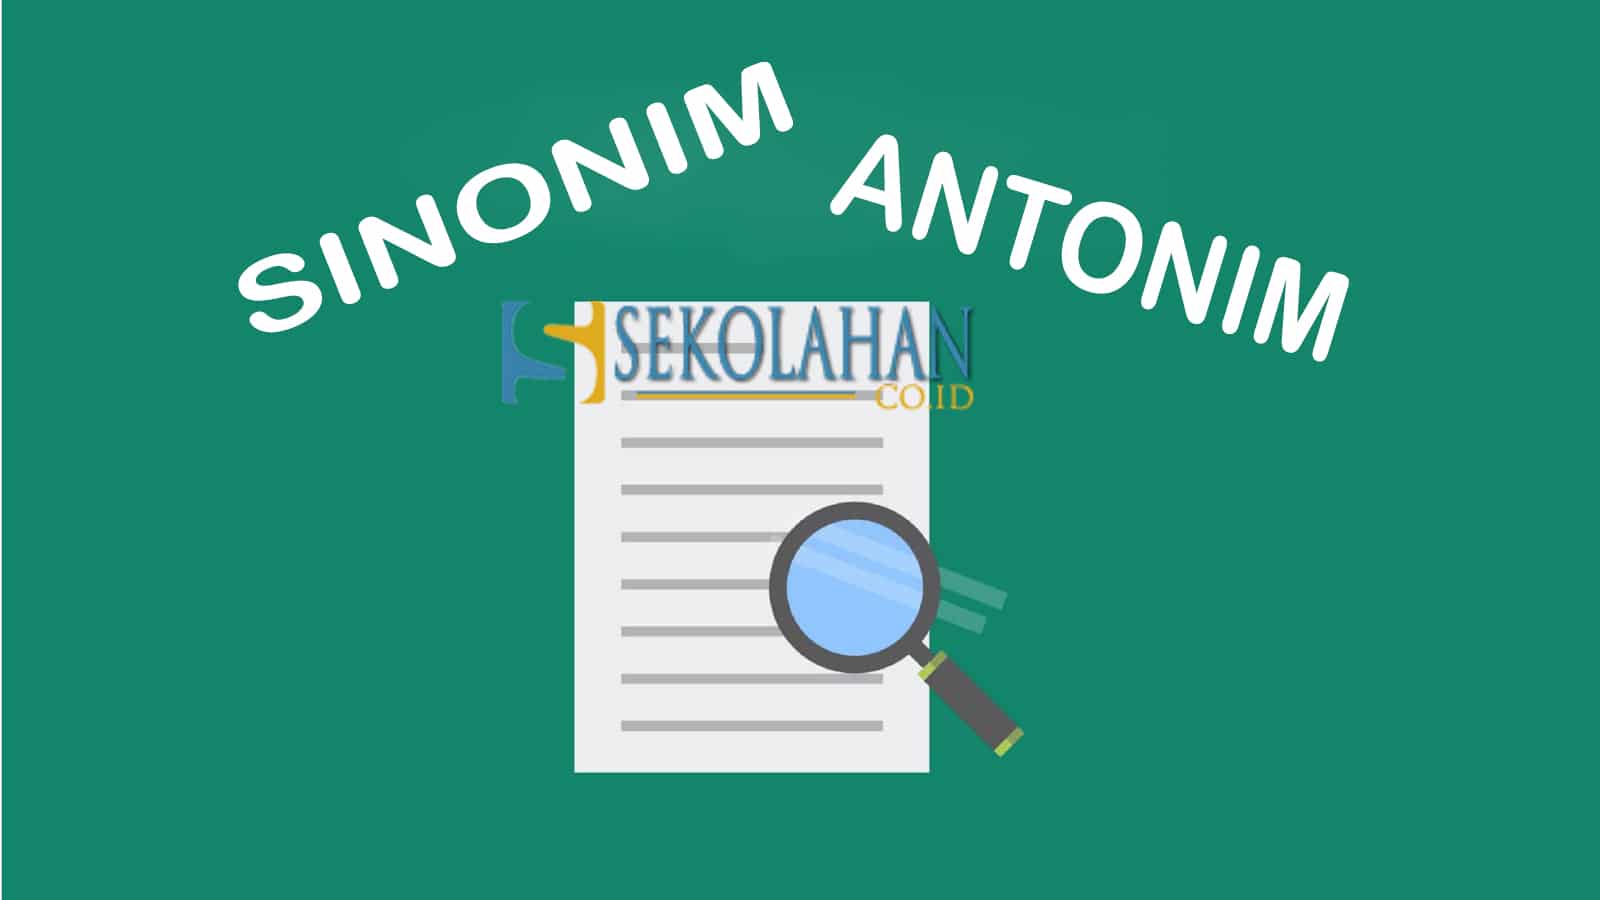 Cari Tahu tentang Sinonim dan Antonim, Yuk! Bahasa Indonesia Kelas 5